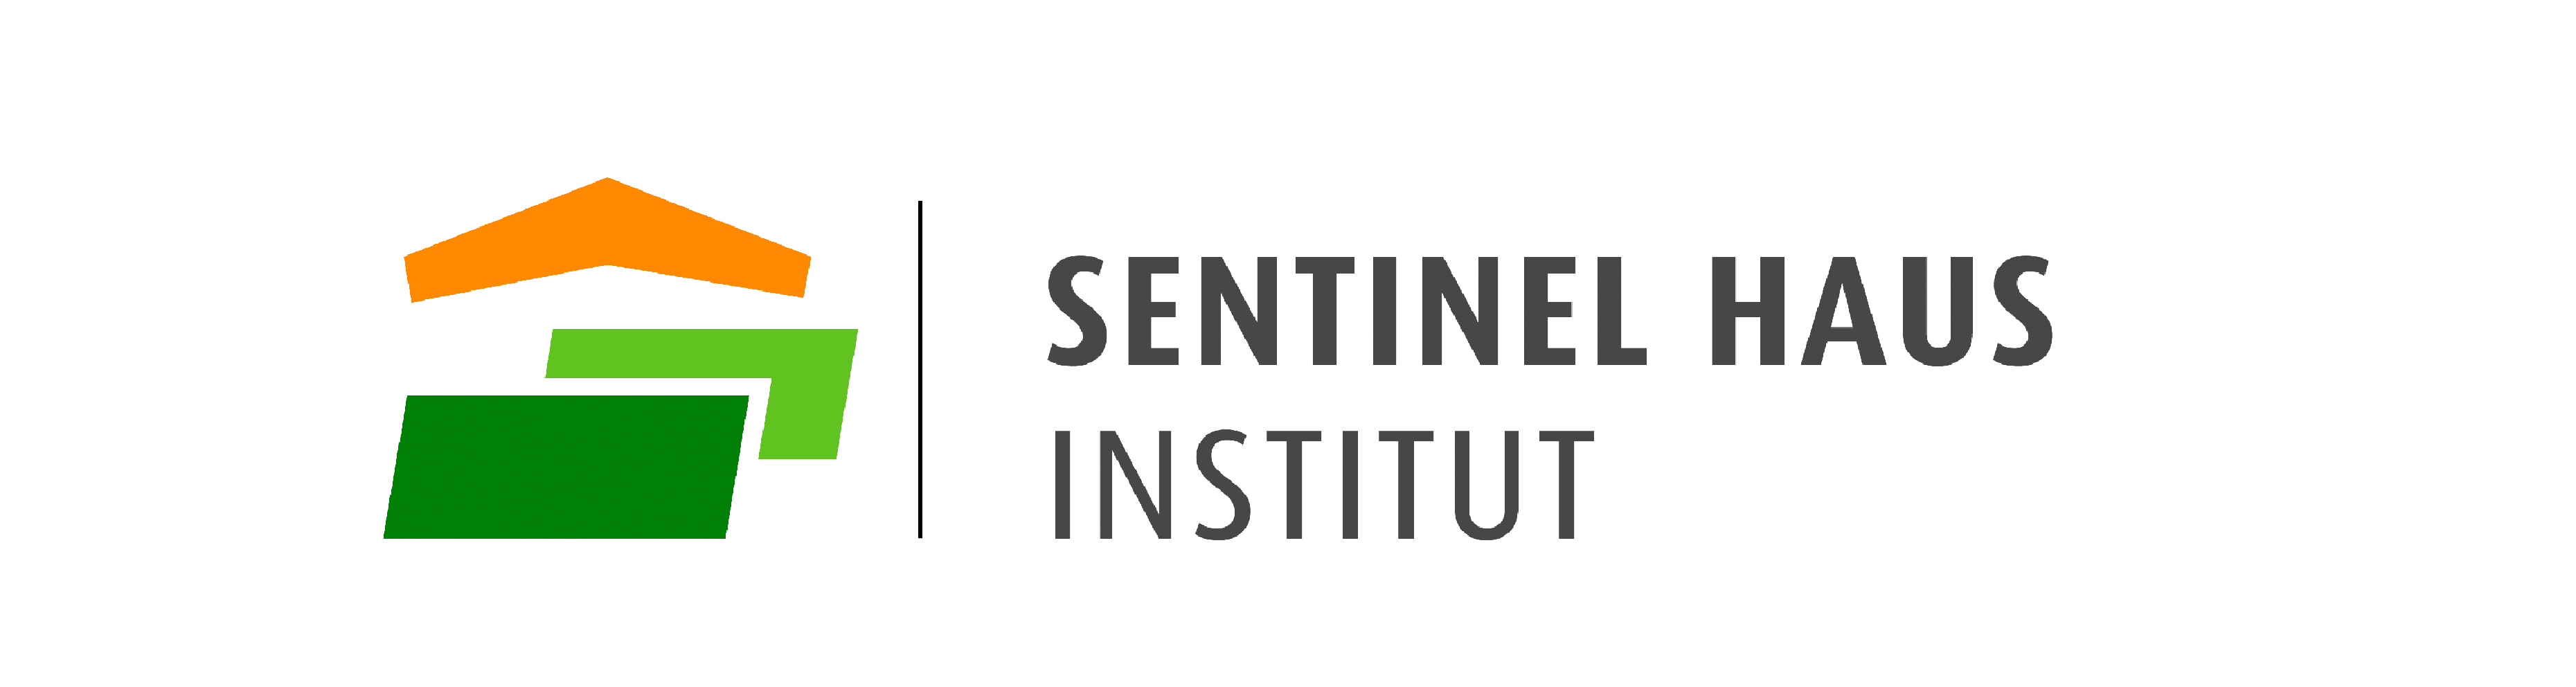 Das Logo von Sentinel Haus Institut